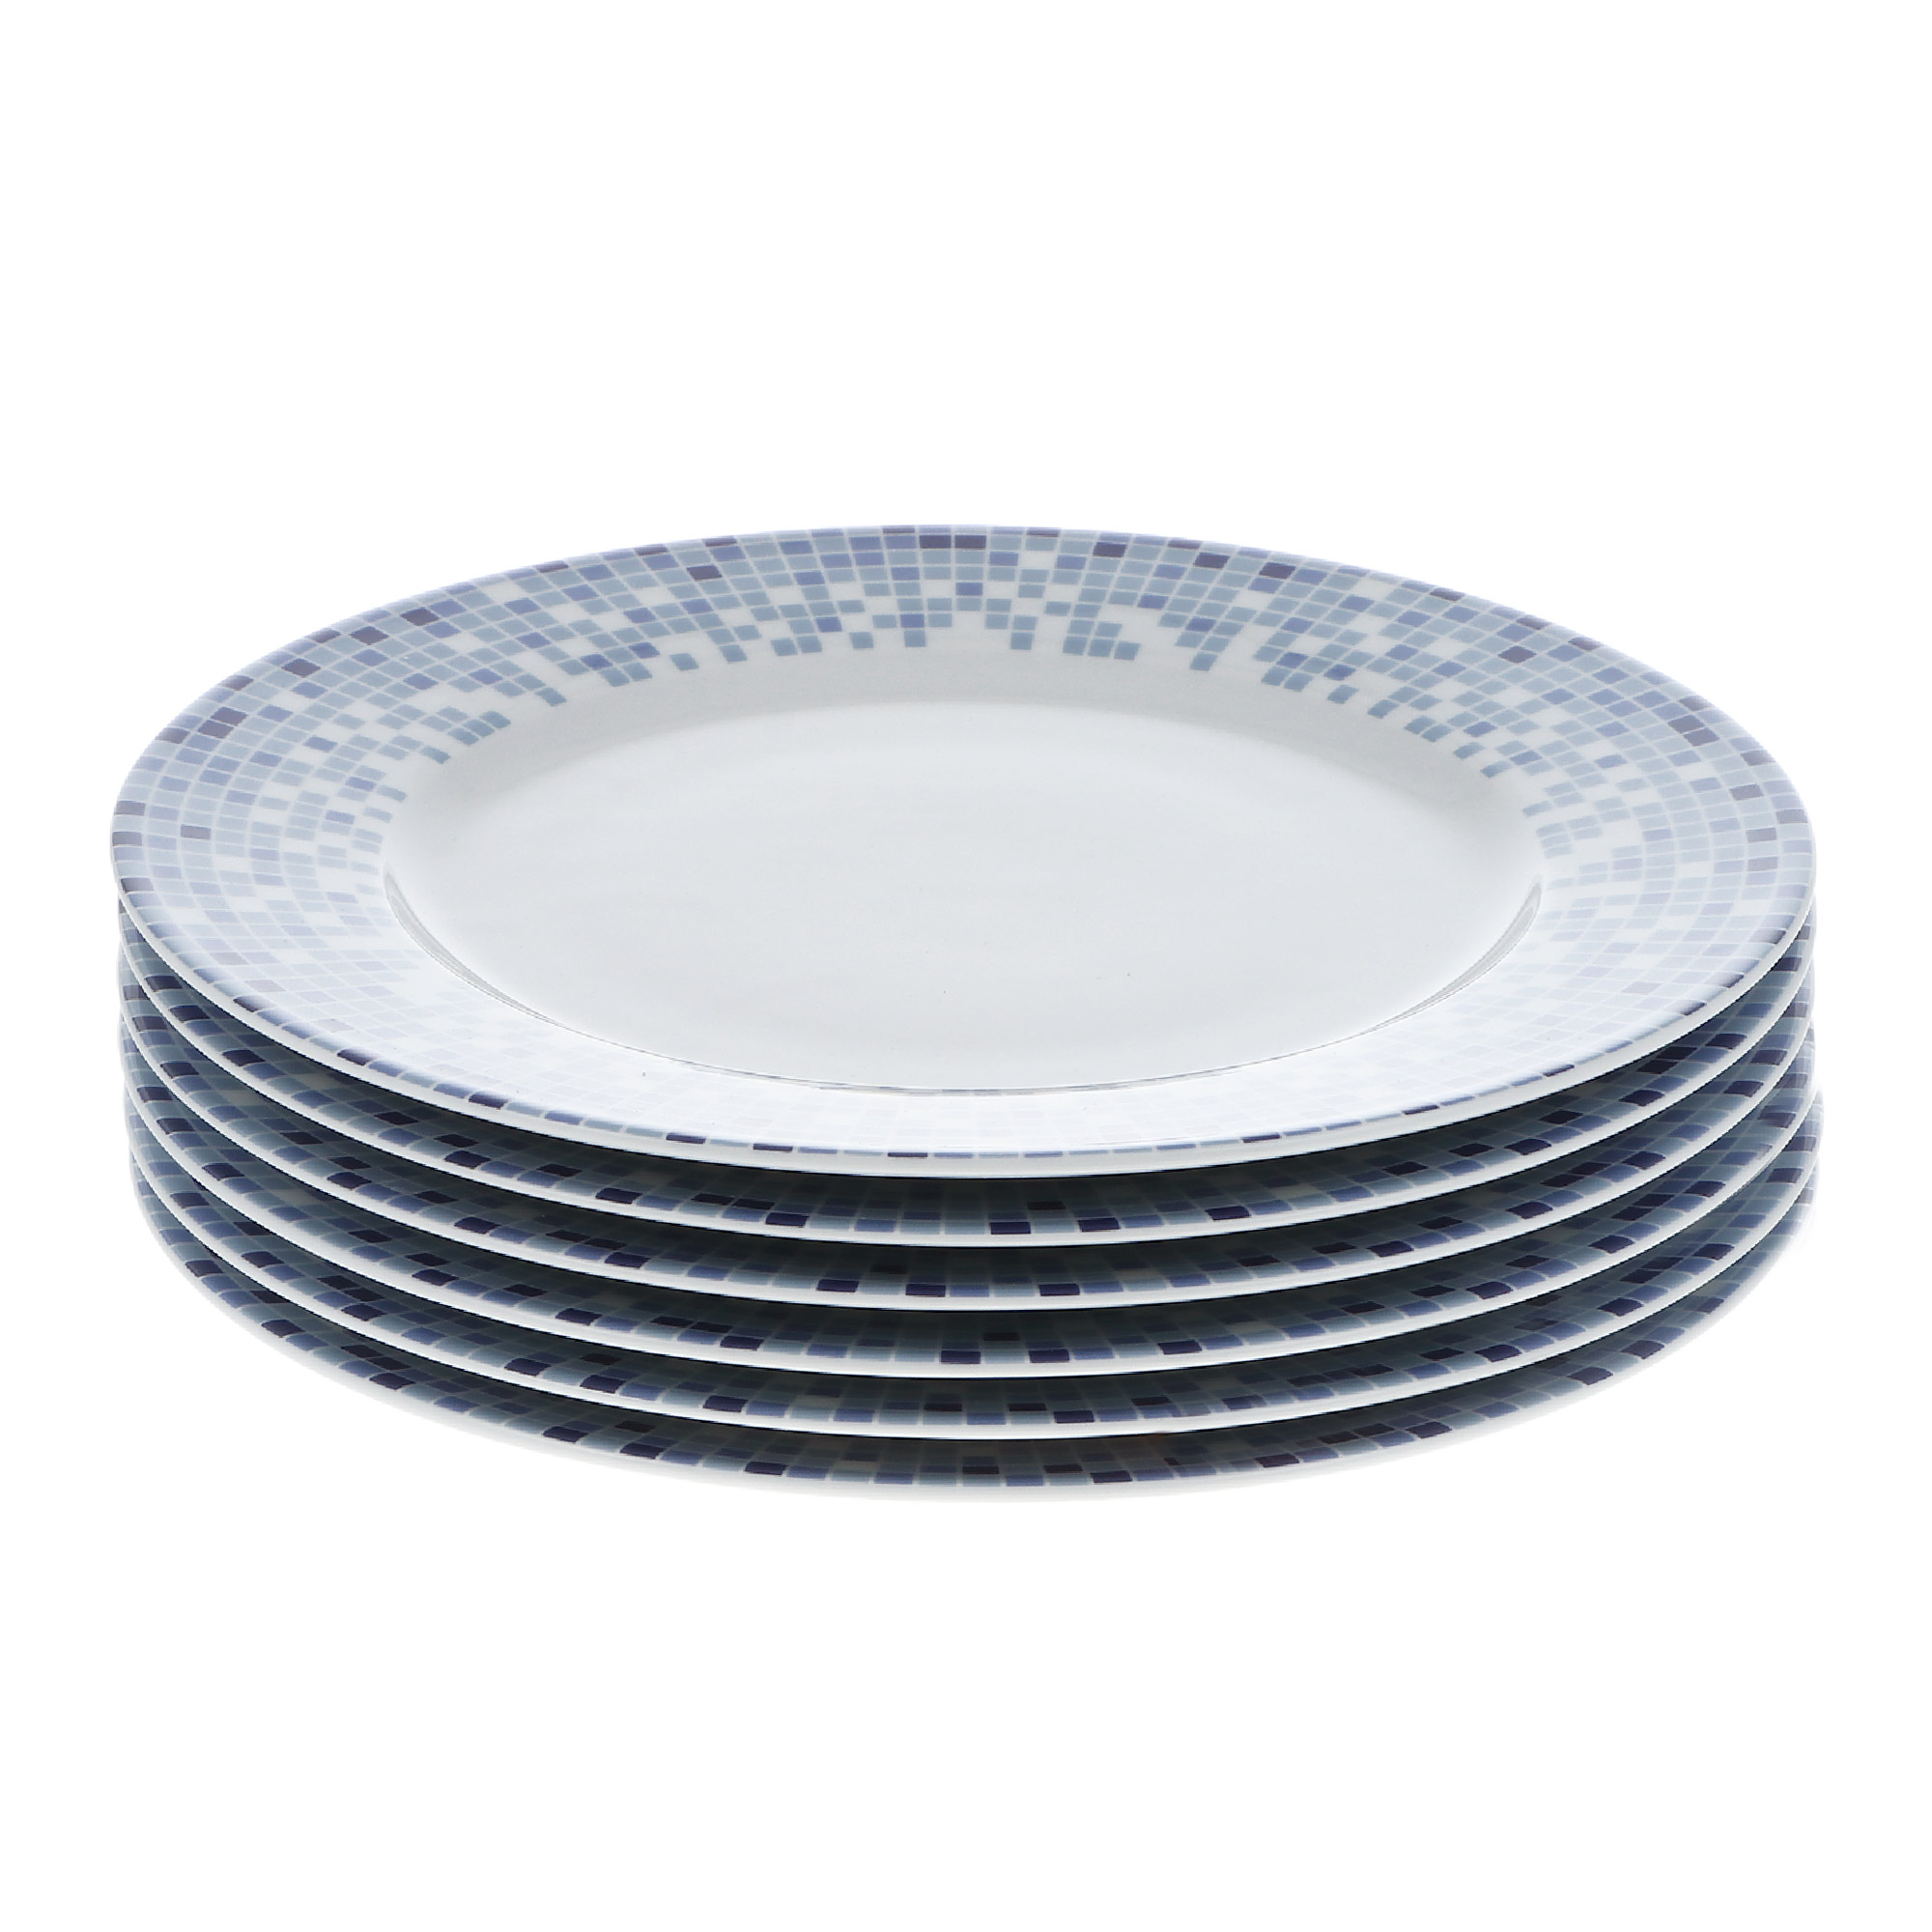 Набор тарелок 19 см декор мозаика Thun1794 набор тарелок глубоких 23 см 6шт thun1794 белоснежный тюльпан золотые держатели